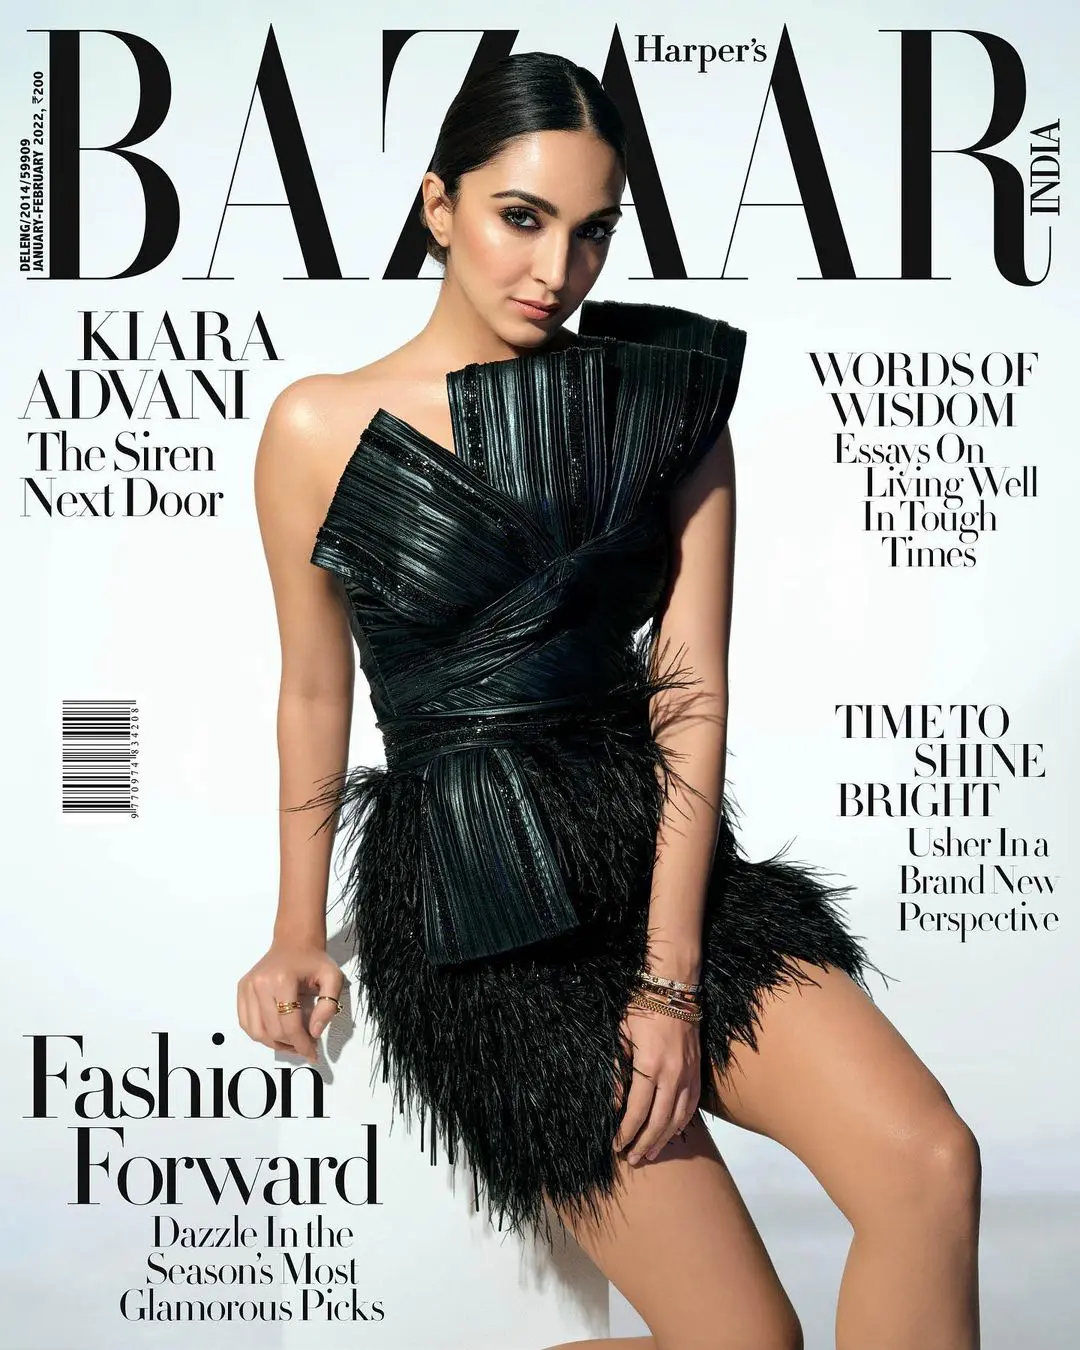 Kiara Advani in Black For Bazaar Magazine